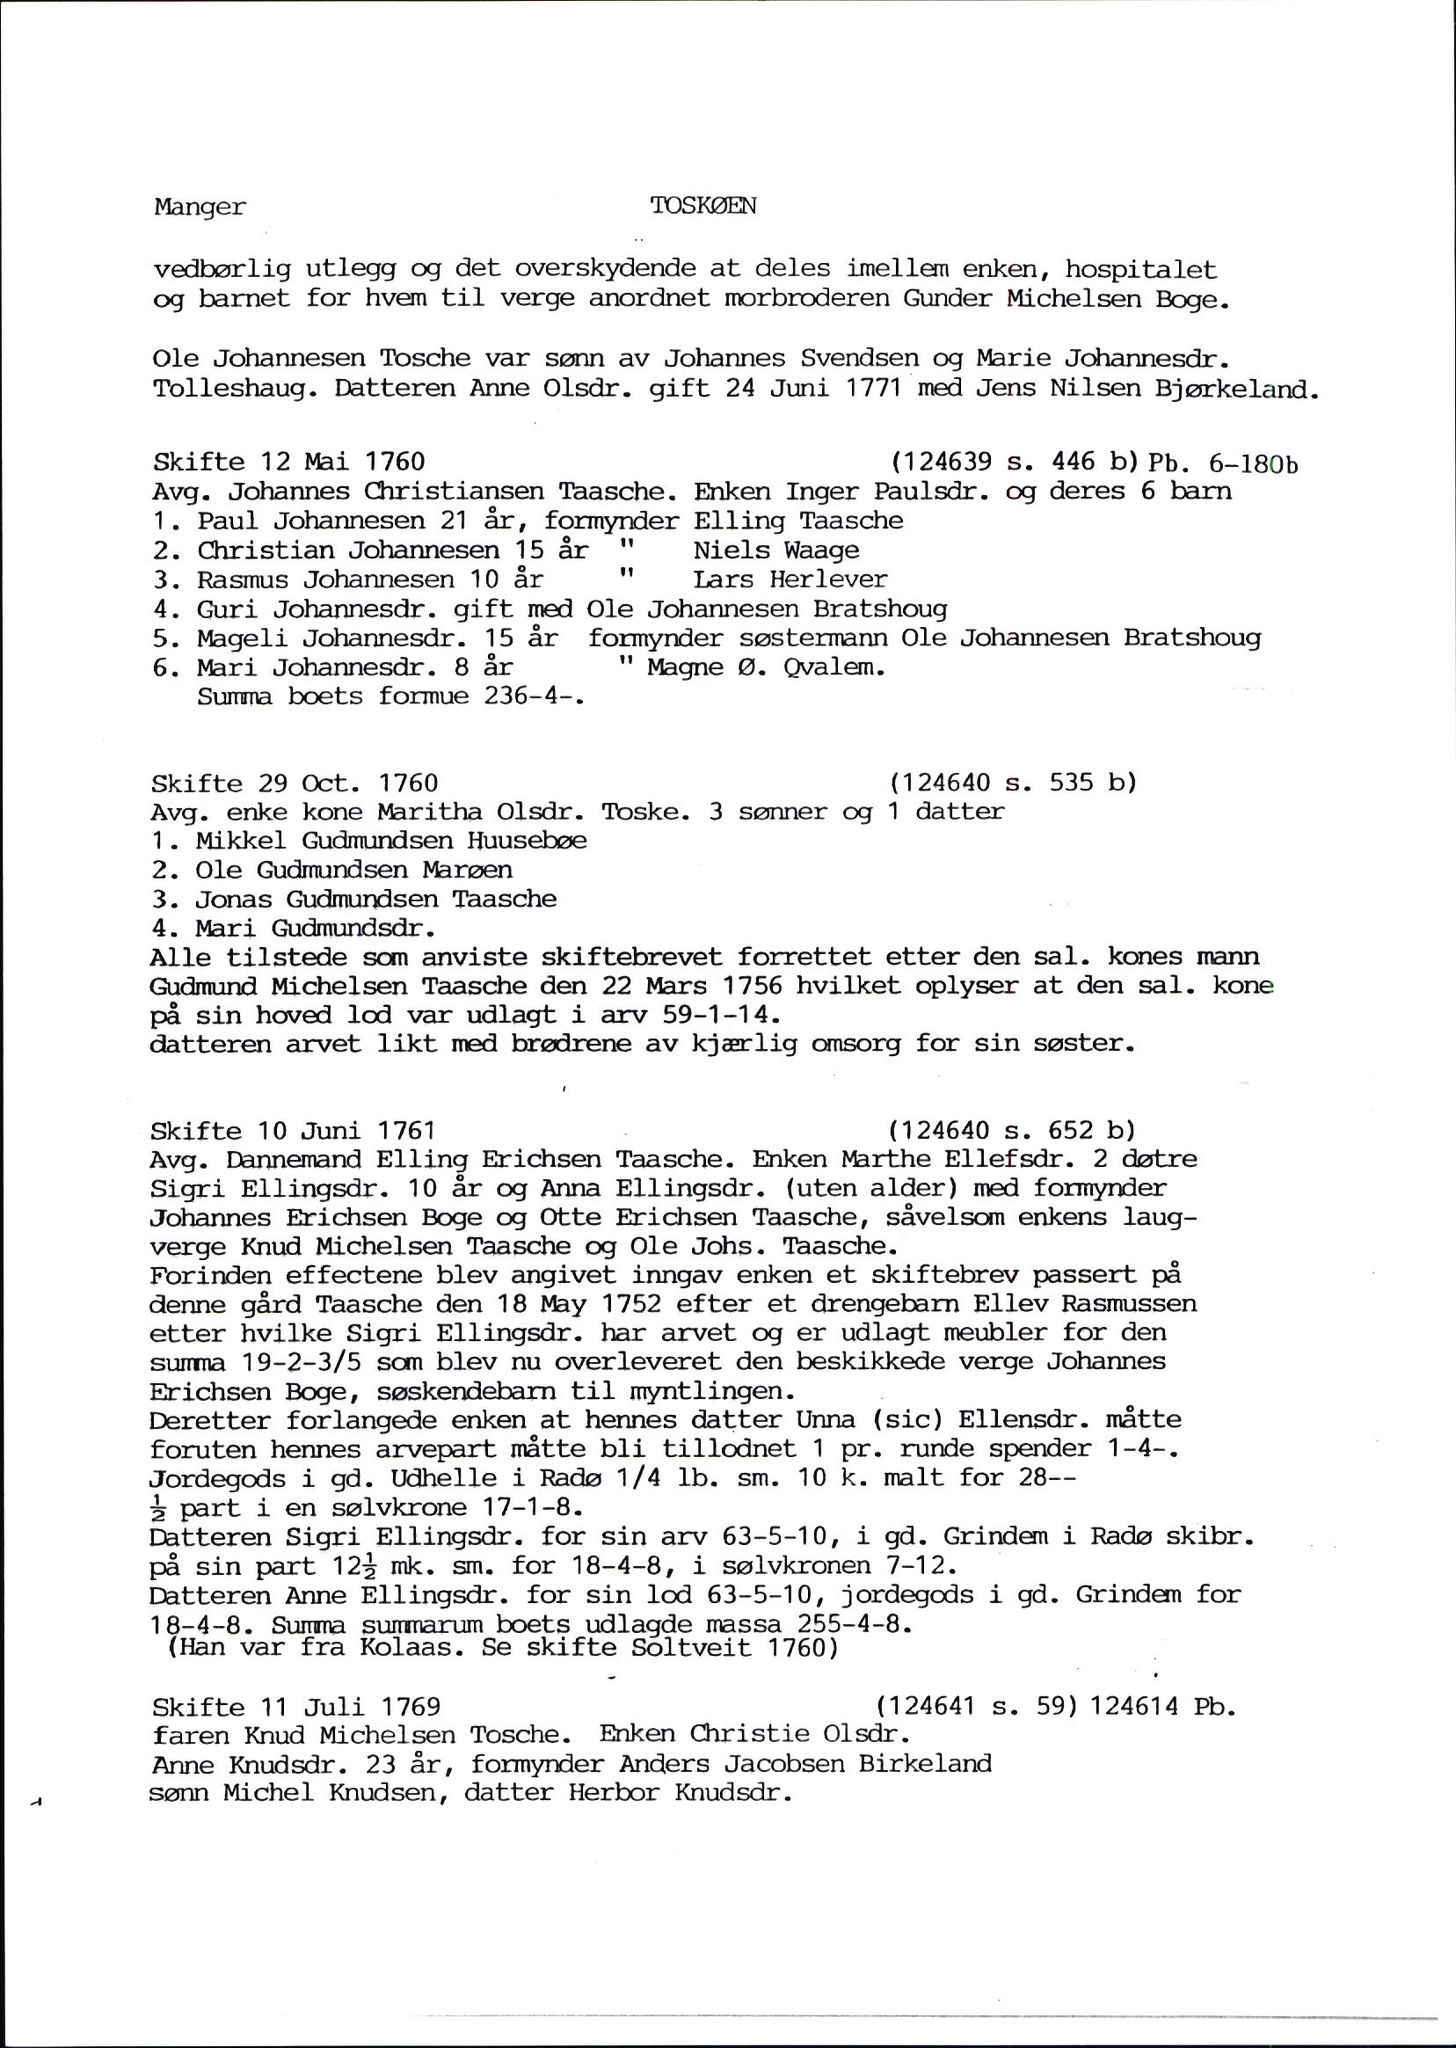 Samling av fulltekstavskrifter, SAB/FULLTEKST/D/12/0001: Skifter og andre opplysninger fra gårder i Manger prestegjeld (soknene Herdla, Bø, Sæbø og Manger) ca. 1700 - ca. 1800, 1700-1800, s. 51